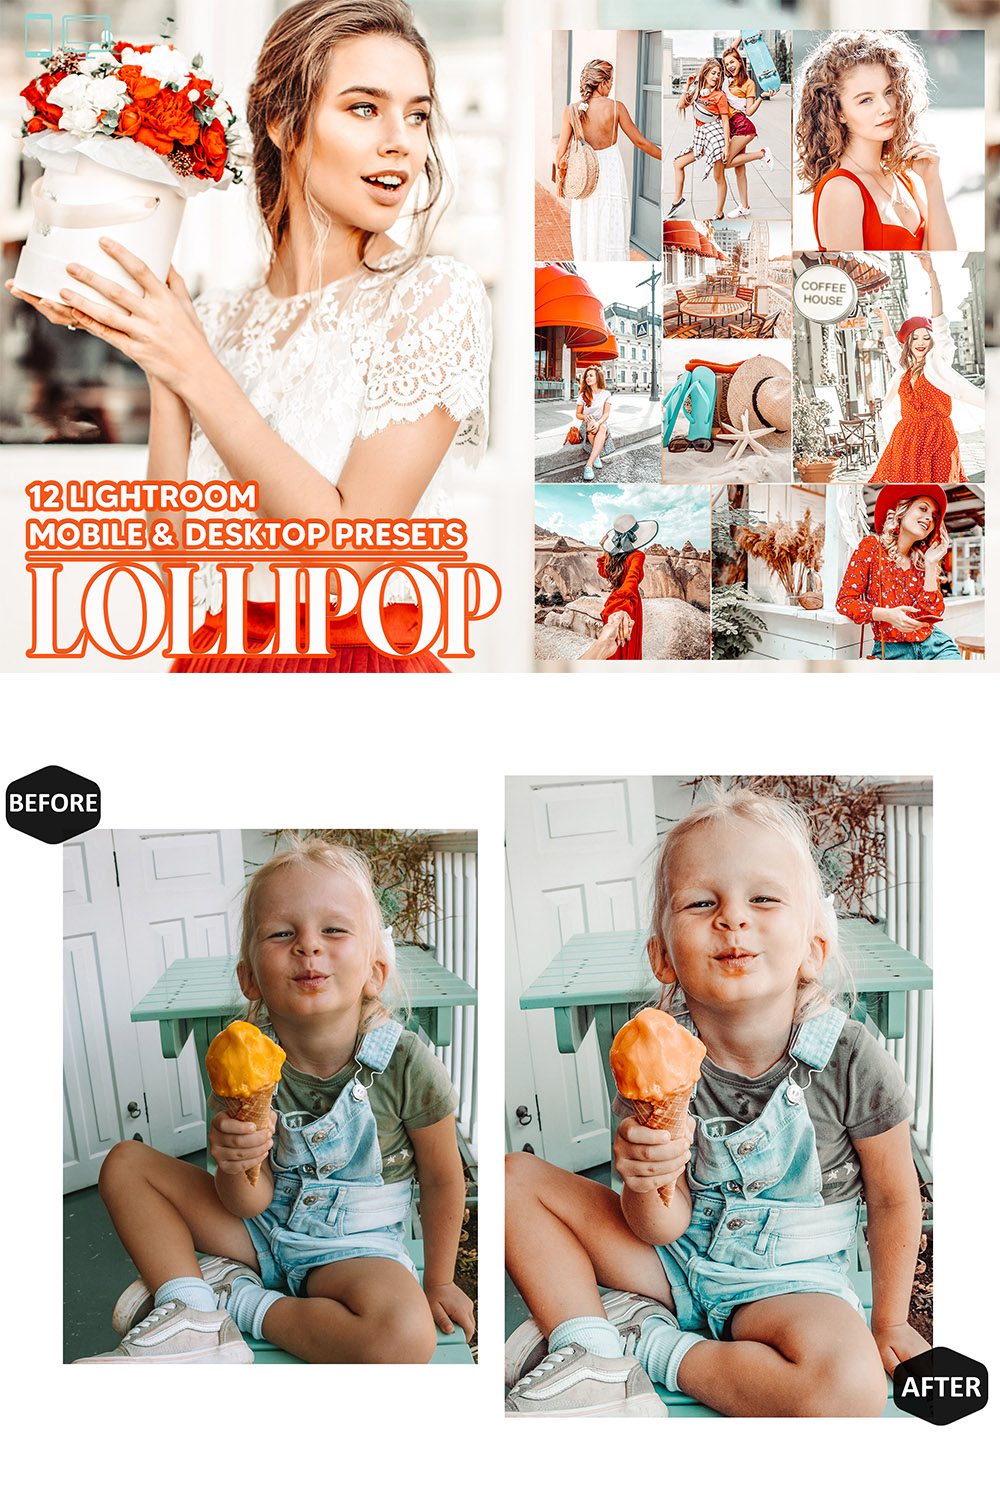 12 Lollipop Lightroom Presets, Bright Summer Mobile Preset, Travel Desktop LR Filter Lifestyle Theme For Blogger Portrait Instagram pinterest preview image.